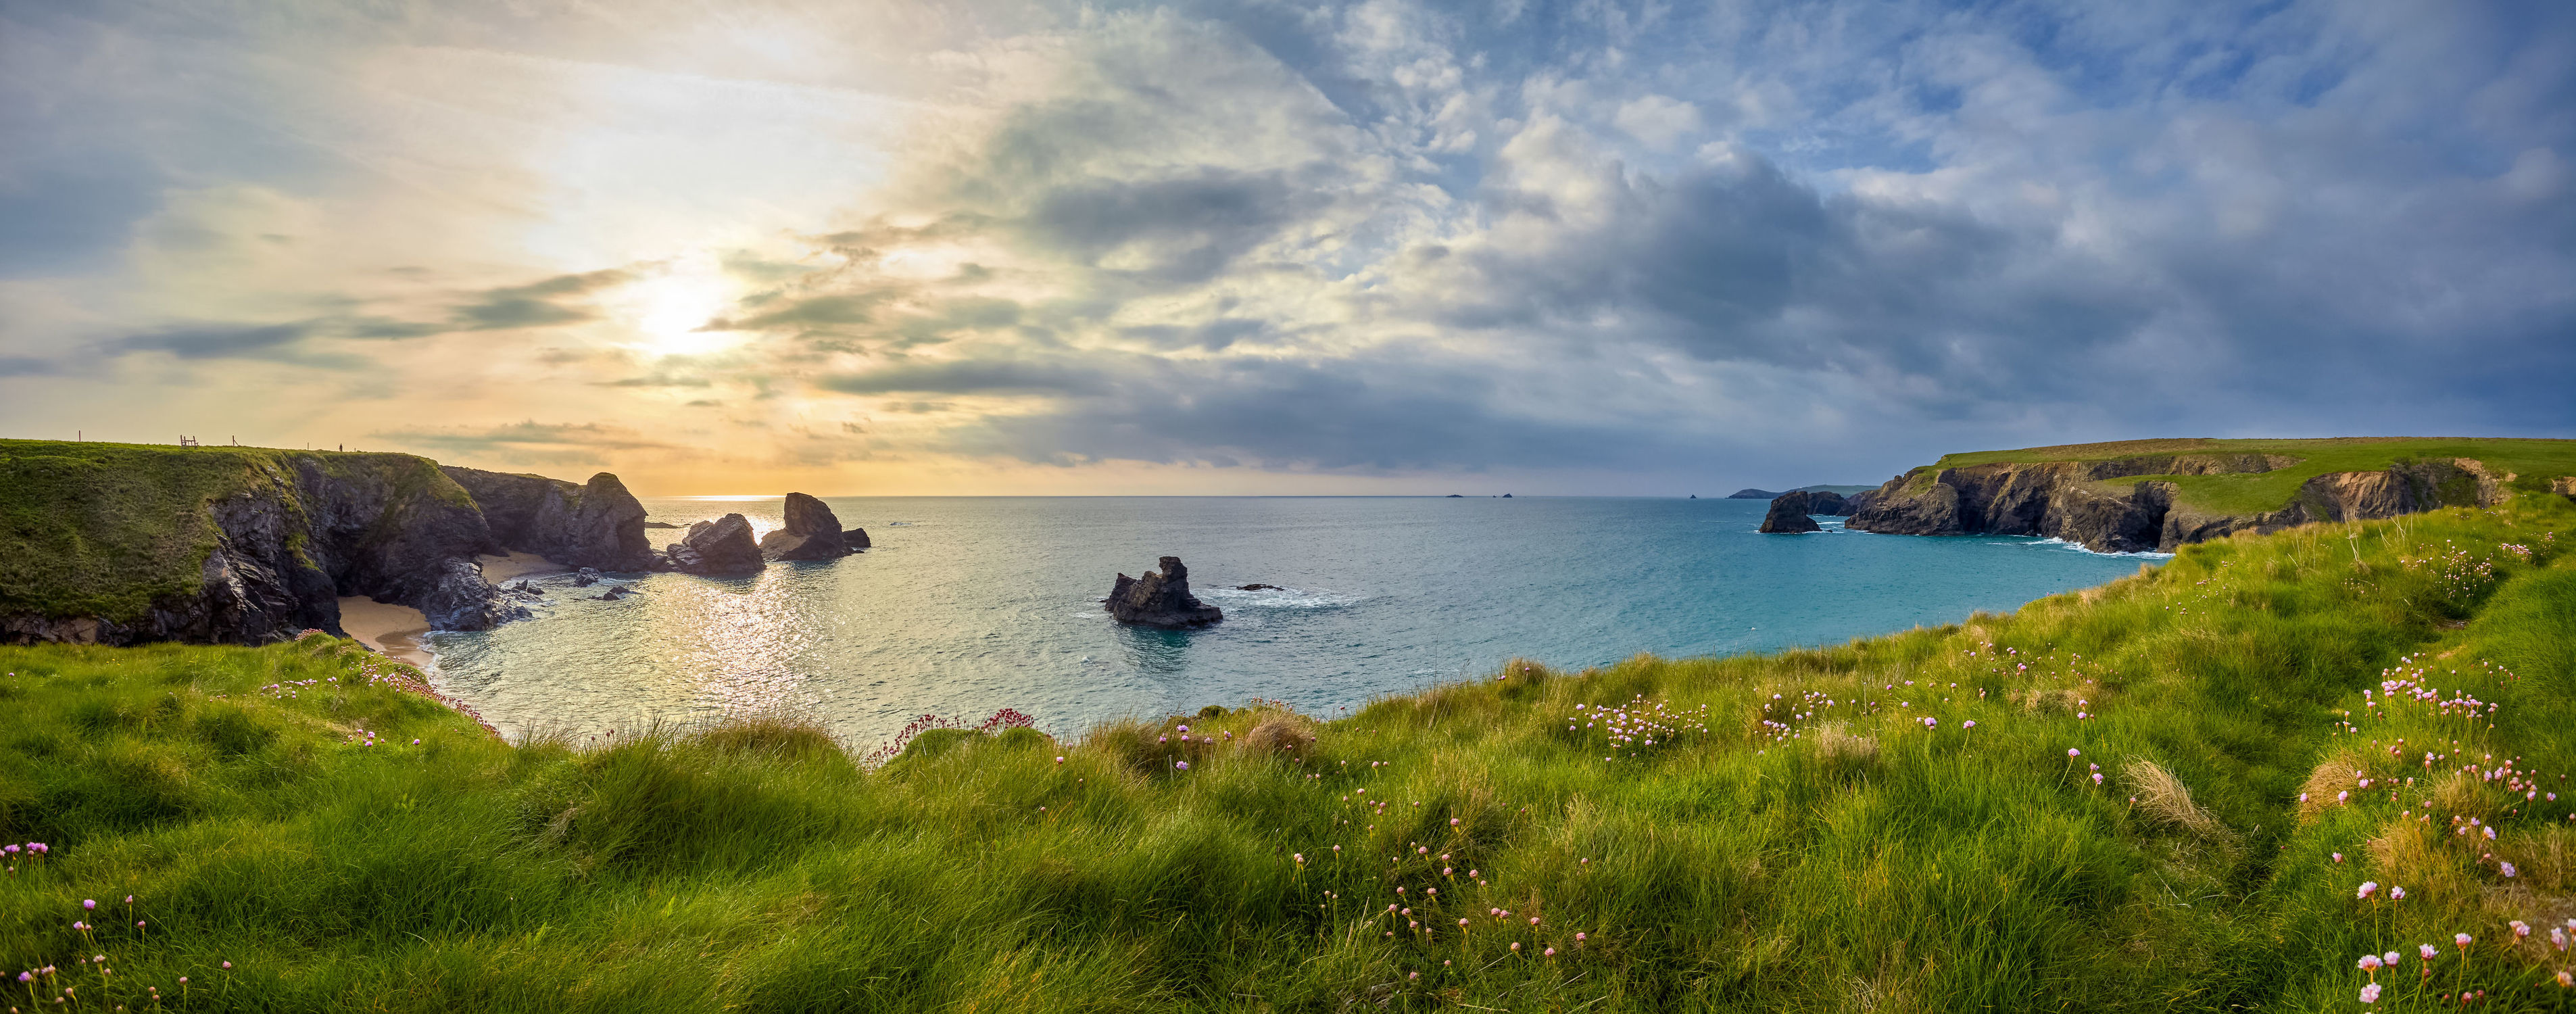 Bild mit Natur, Grün, England, Panorama, Meer, Gras, Küste, Klippen, ozean, Cornwall, porthcothan, weite